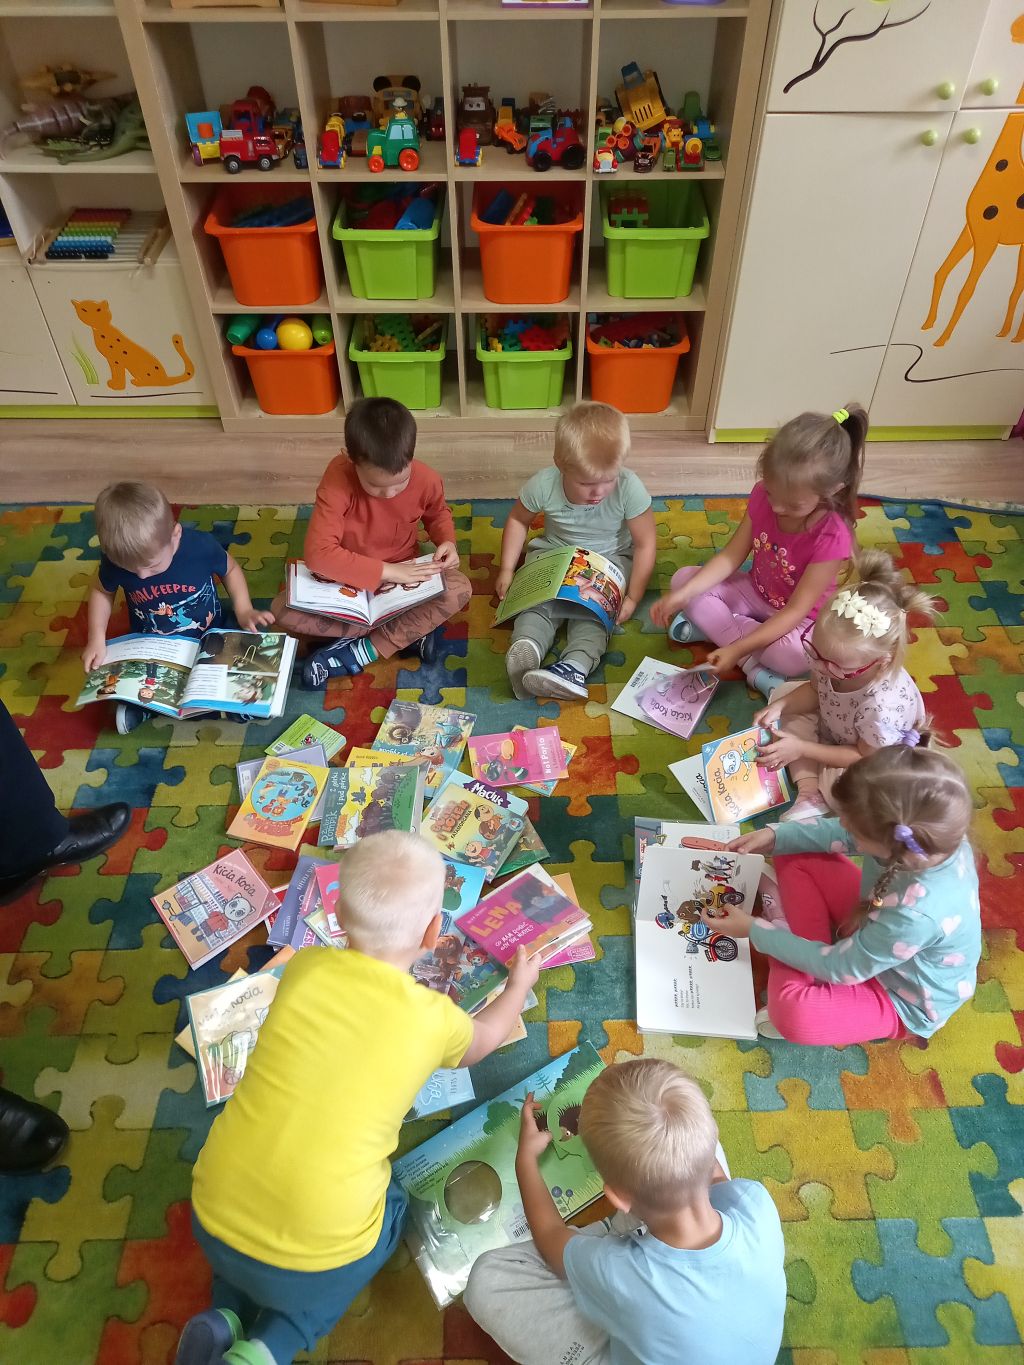 Na zdjęciu widać dzieci siedzące na dywanie w kręgu. Między dziećmi leżą książeczki, któ®e dzieci przeglądają.